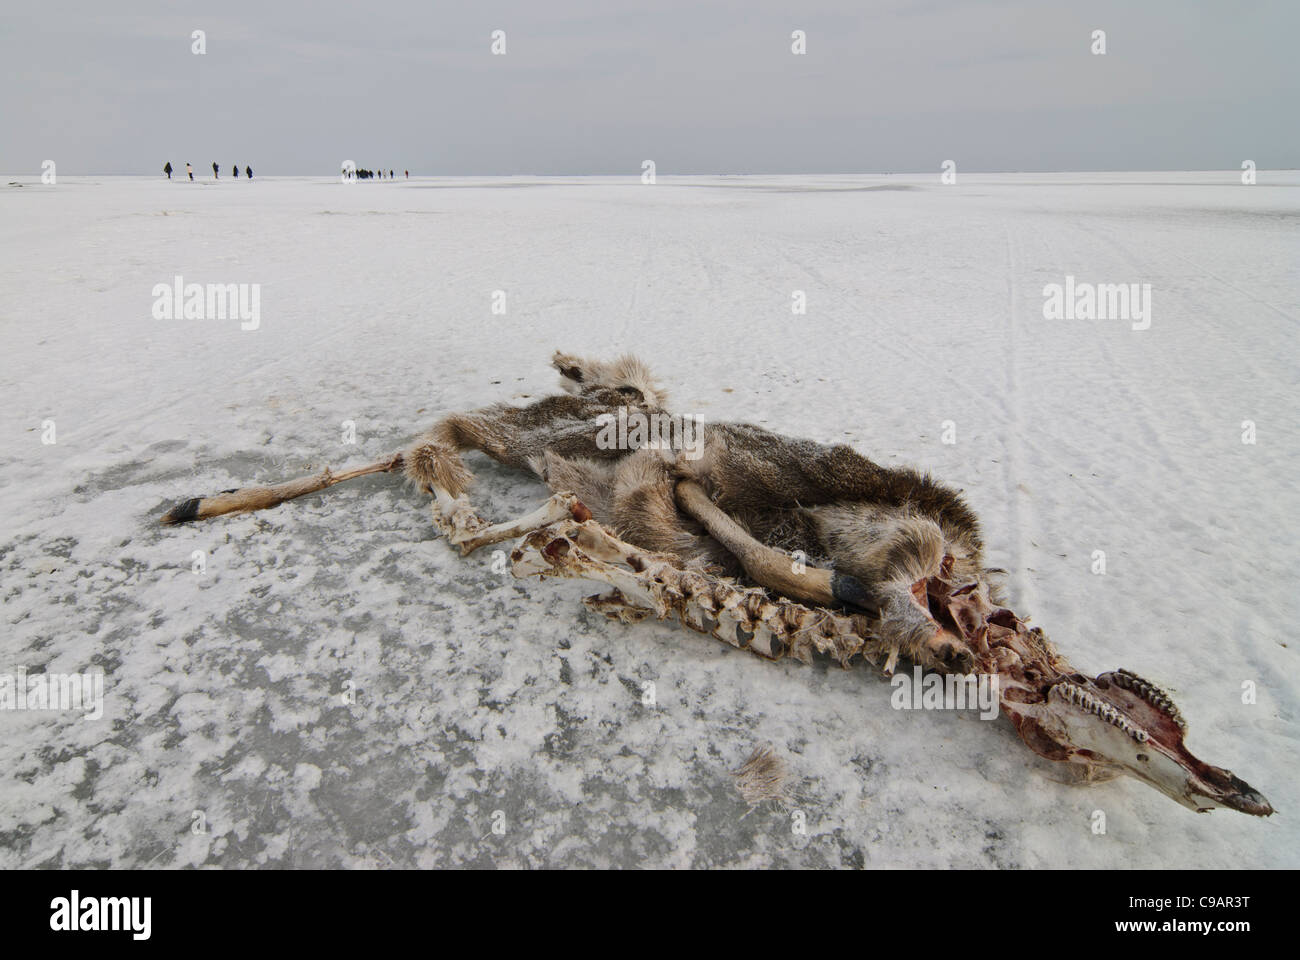 Animal carcass on ice, Shiretoko and Nemuro, Hokkaido, Japan Stock Photo